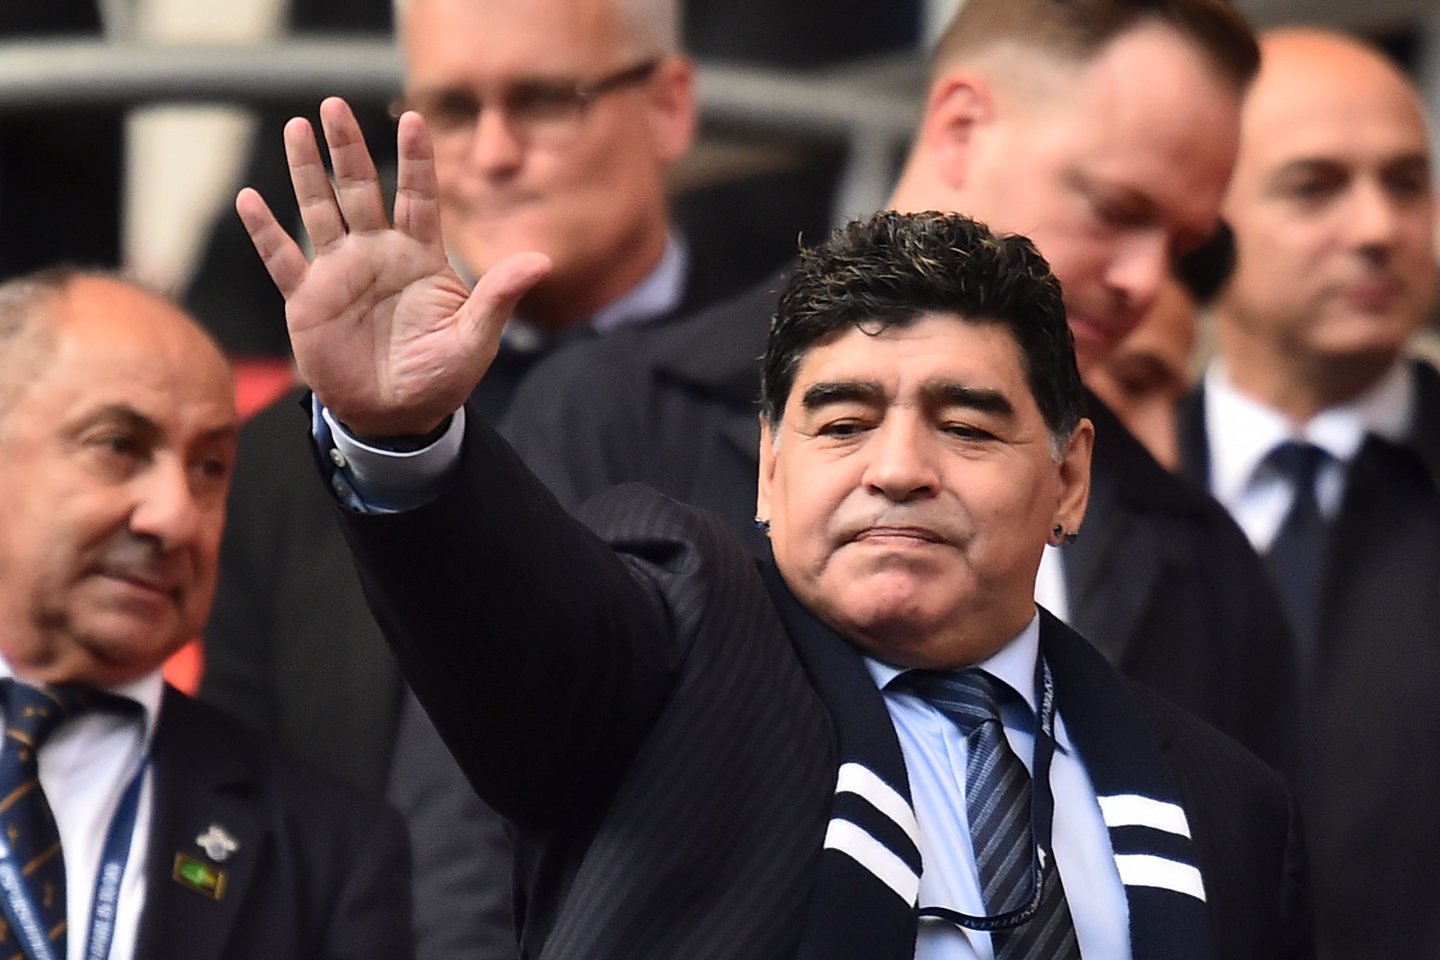 Diego Maradona kas mėnesį savo turtą mažino 100 tūkst. eurų.<br>AFP/Scanpix.com nuotr.